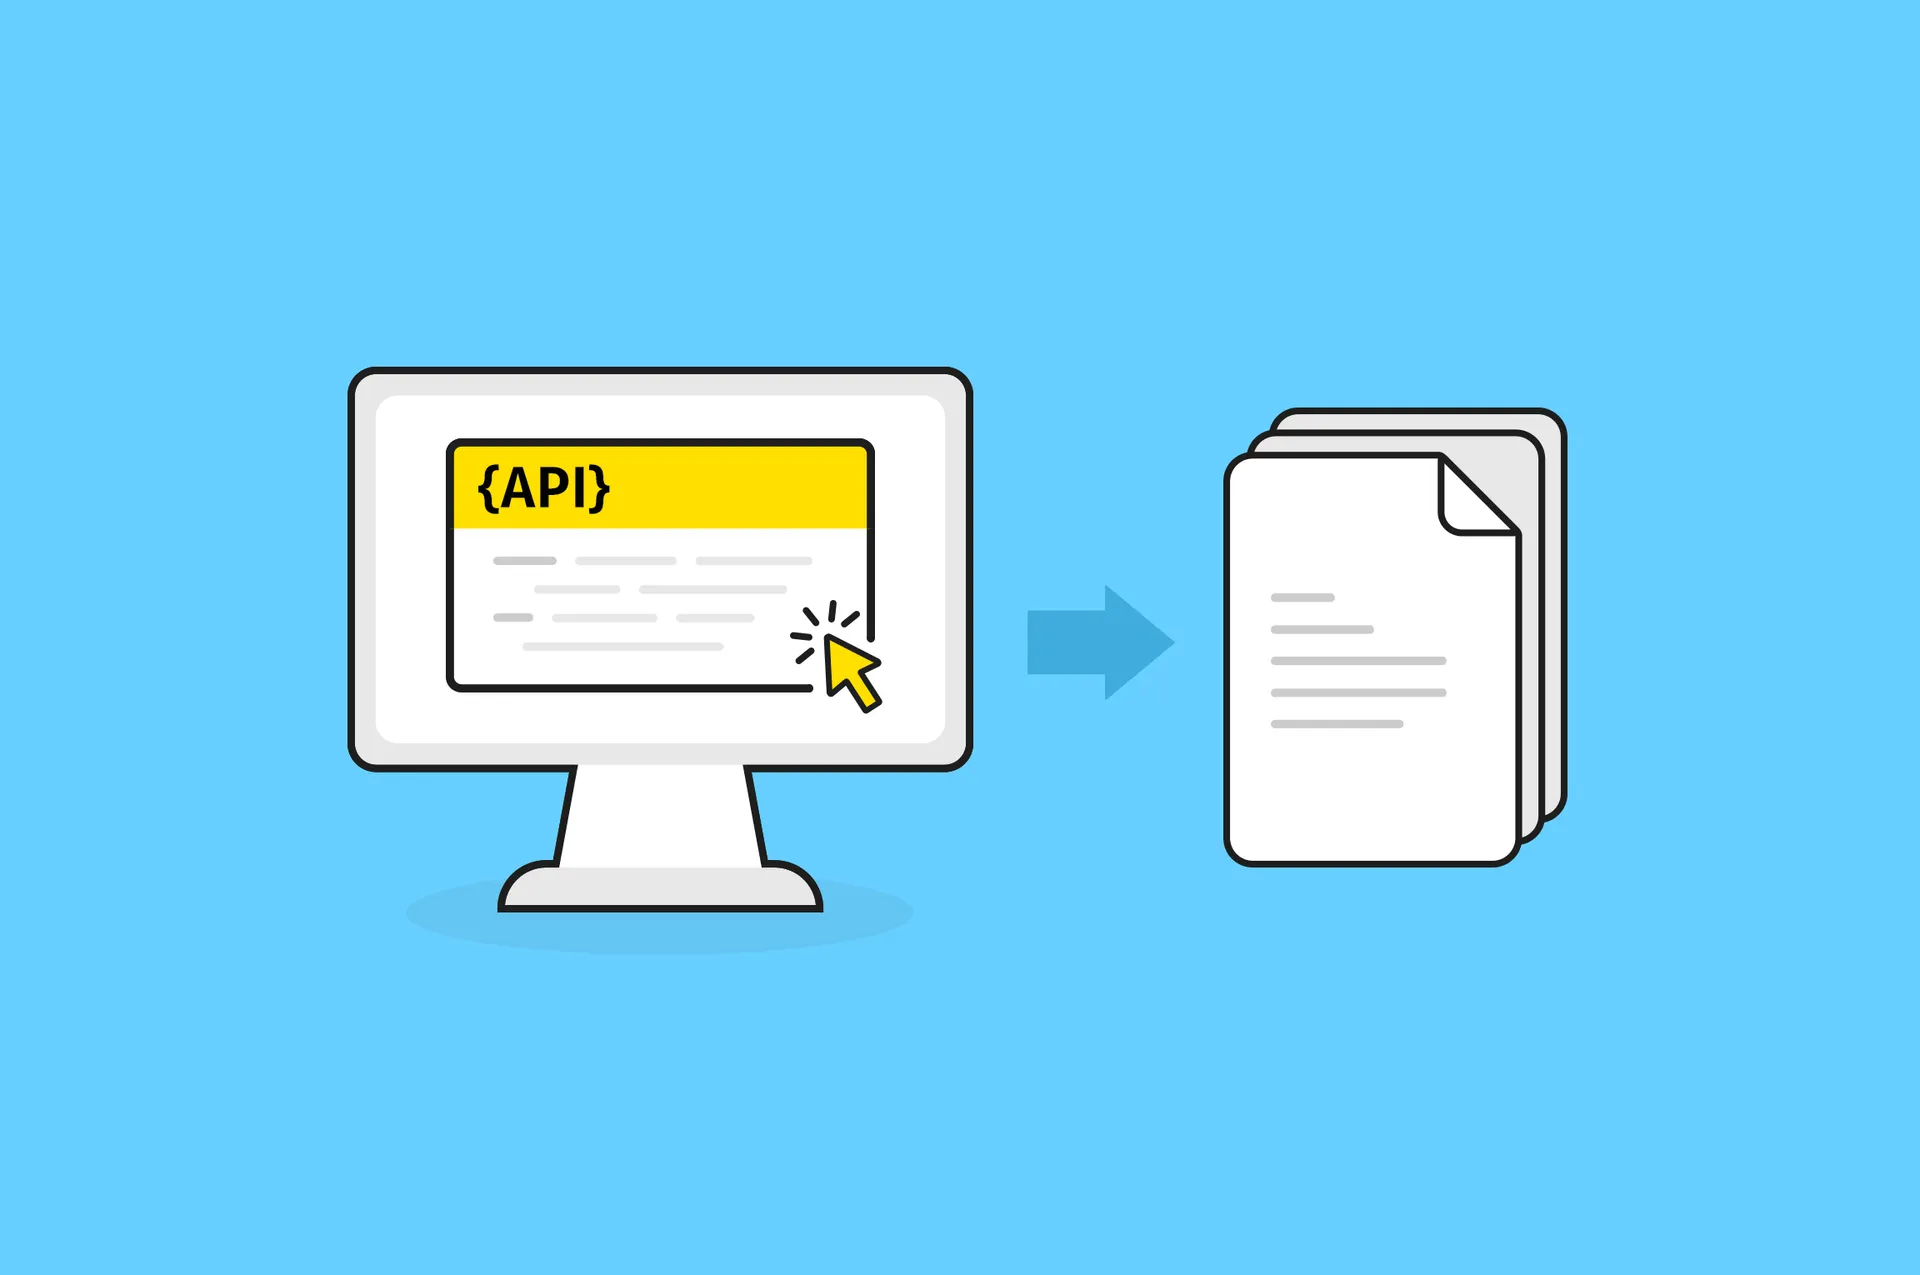 OpenAPI Specification을 이용한 더욱 효과적인 API 문서화